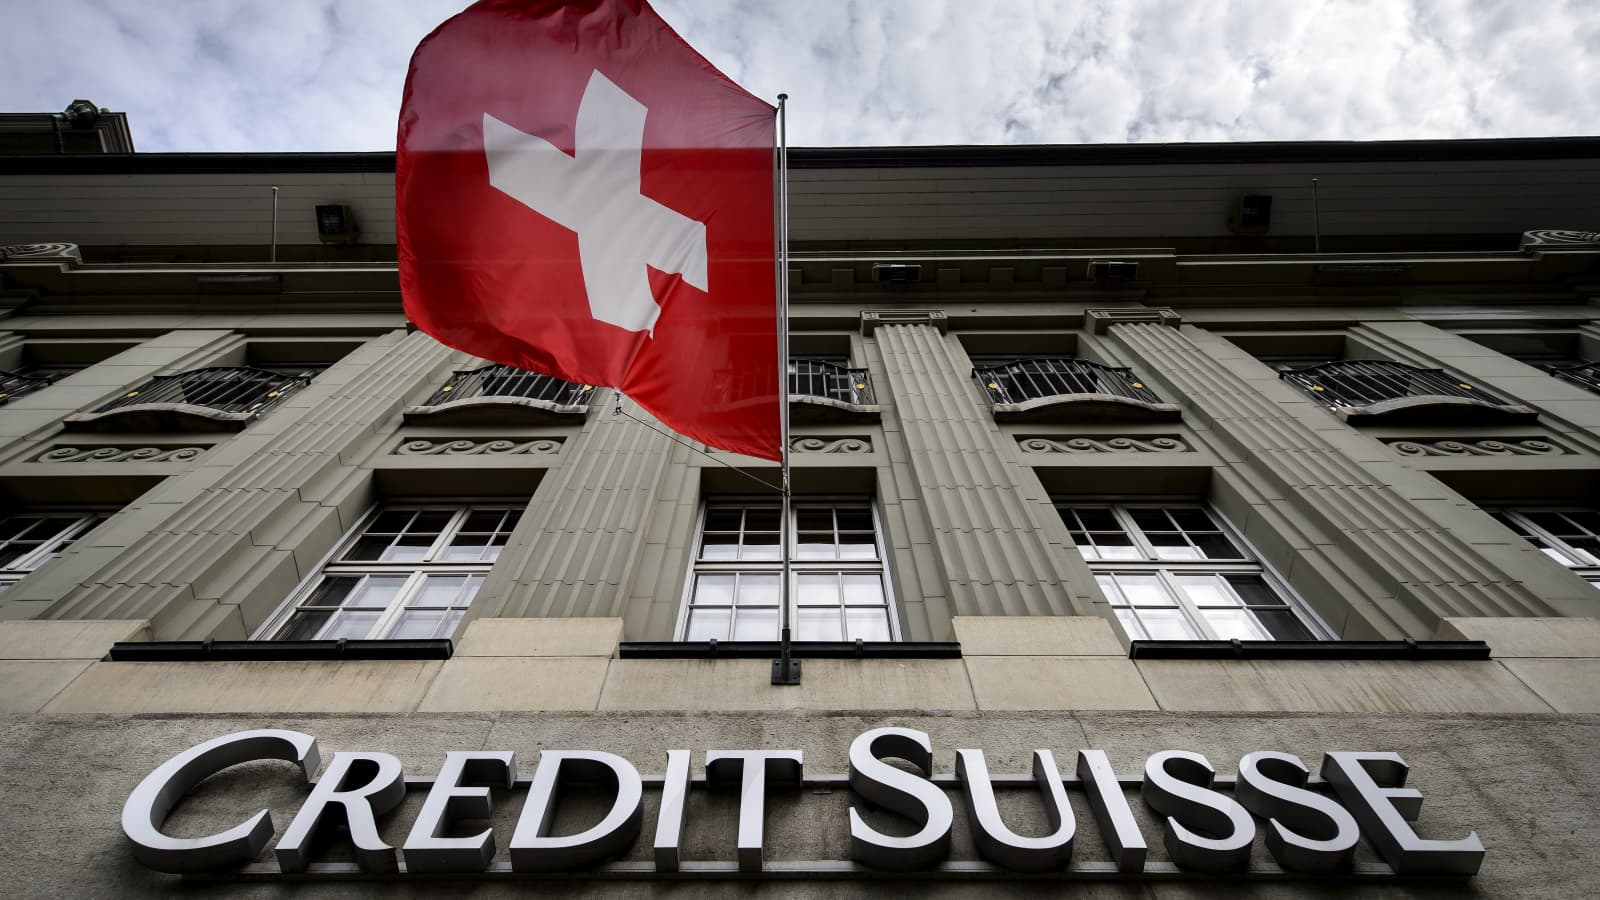 Credit Suisse Group AG rơi vào tình trạng hỗn loạn thị trường mới sau khi Giám đốc điều hành Ulrich Koerner cố gắng trấn an nhân viên và nhà đầu tư bị phản tác dụng, làm tăng thêm sự không chắc chắn xung quanh ngân hàng. Ảnh: @AFP.